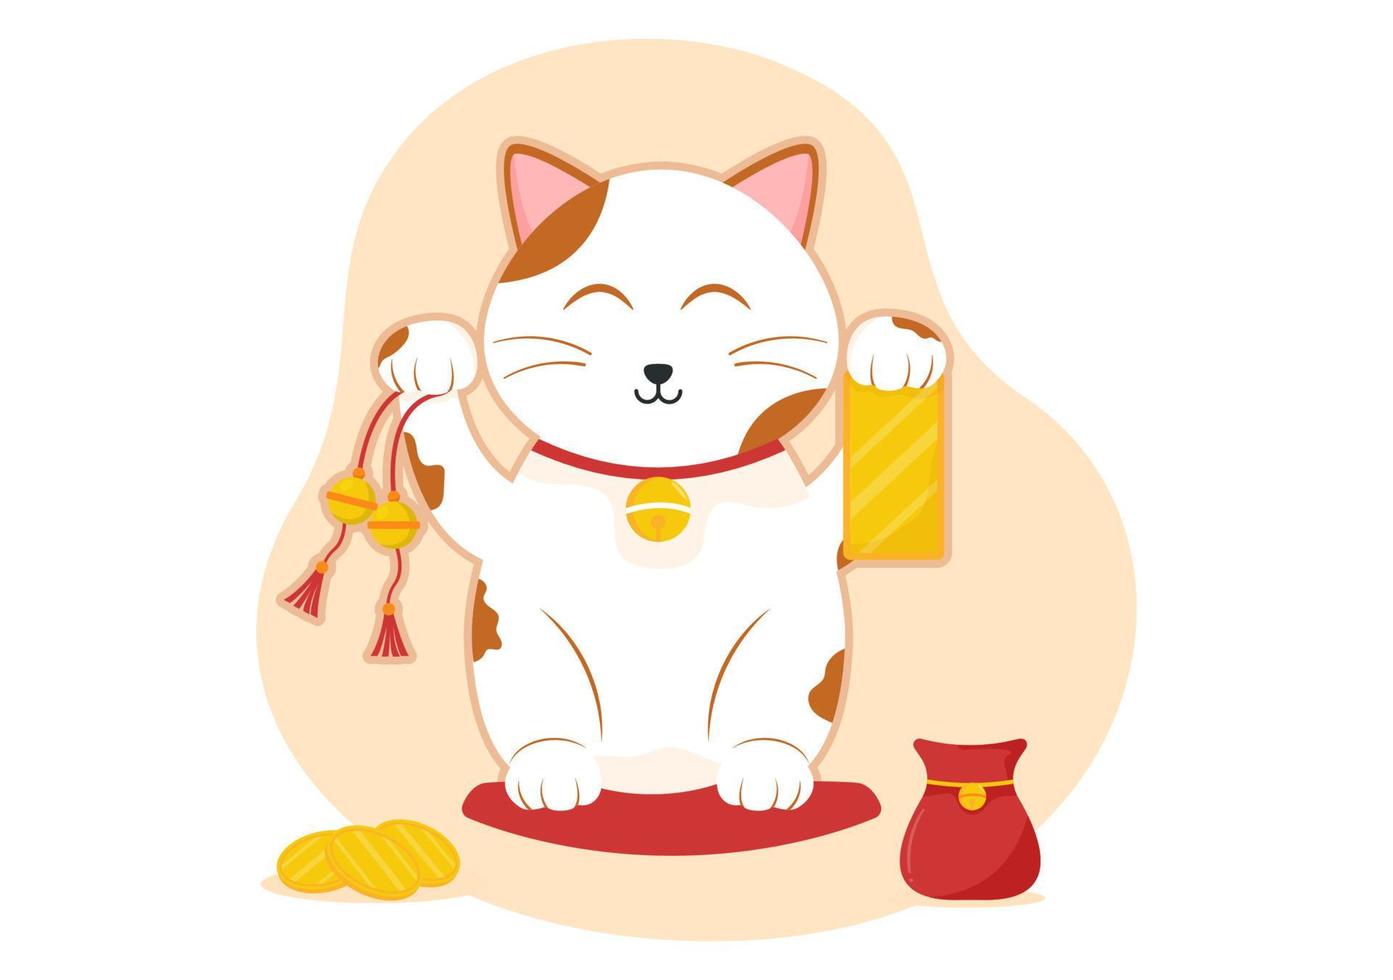 filosofía oriental feng shui con lindo gato y plantas para energía positiva  de cinco elementos en dibujos animados planos dibujados a mano ilustración  de plantillas 16006524 Vector en Vecteezy